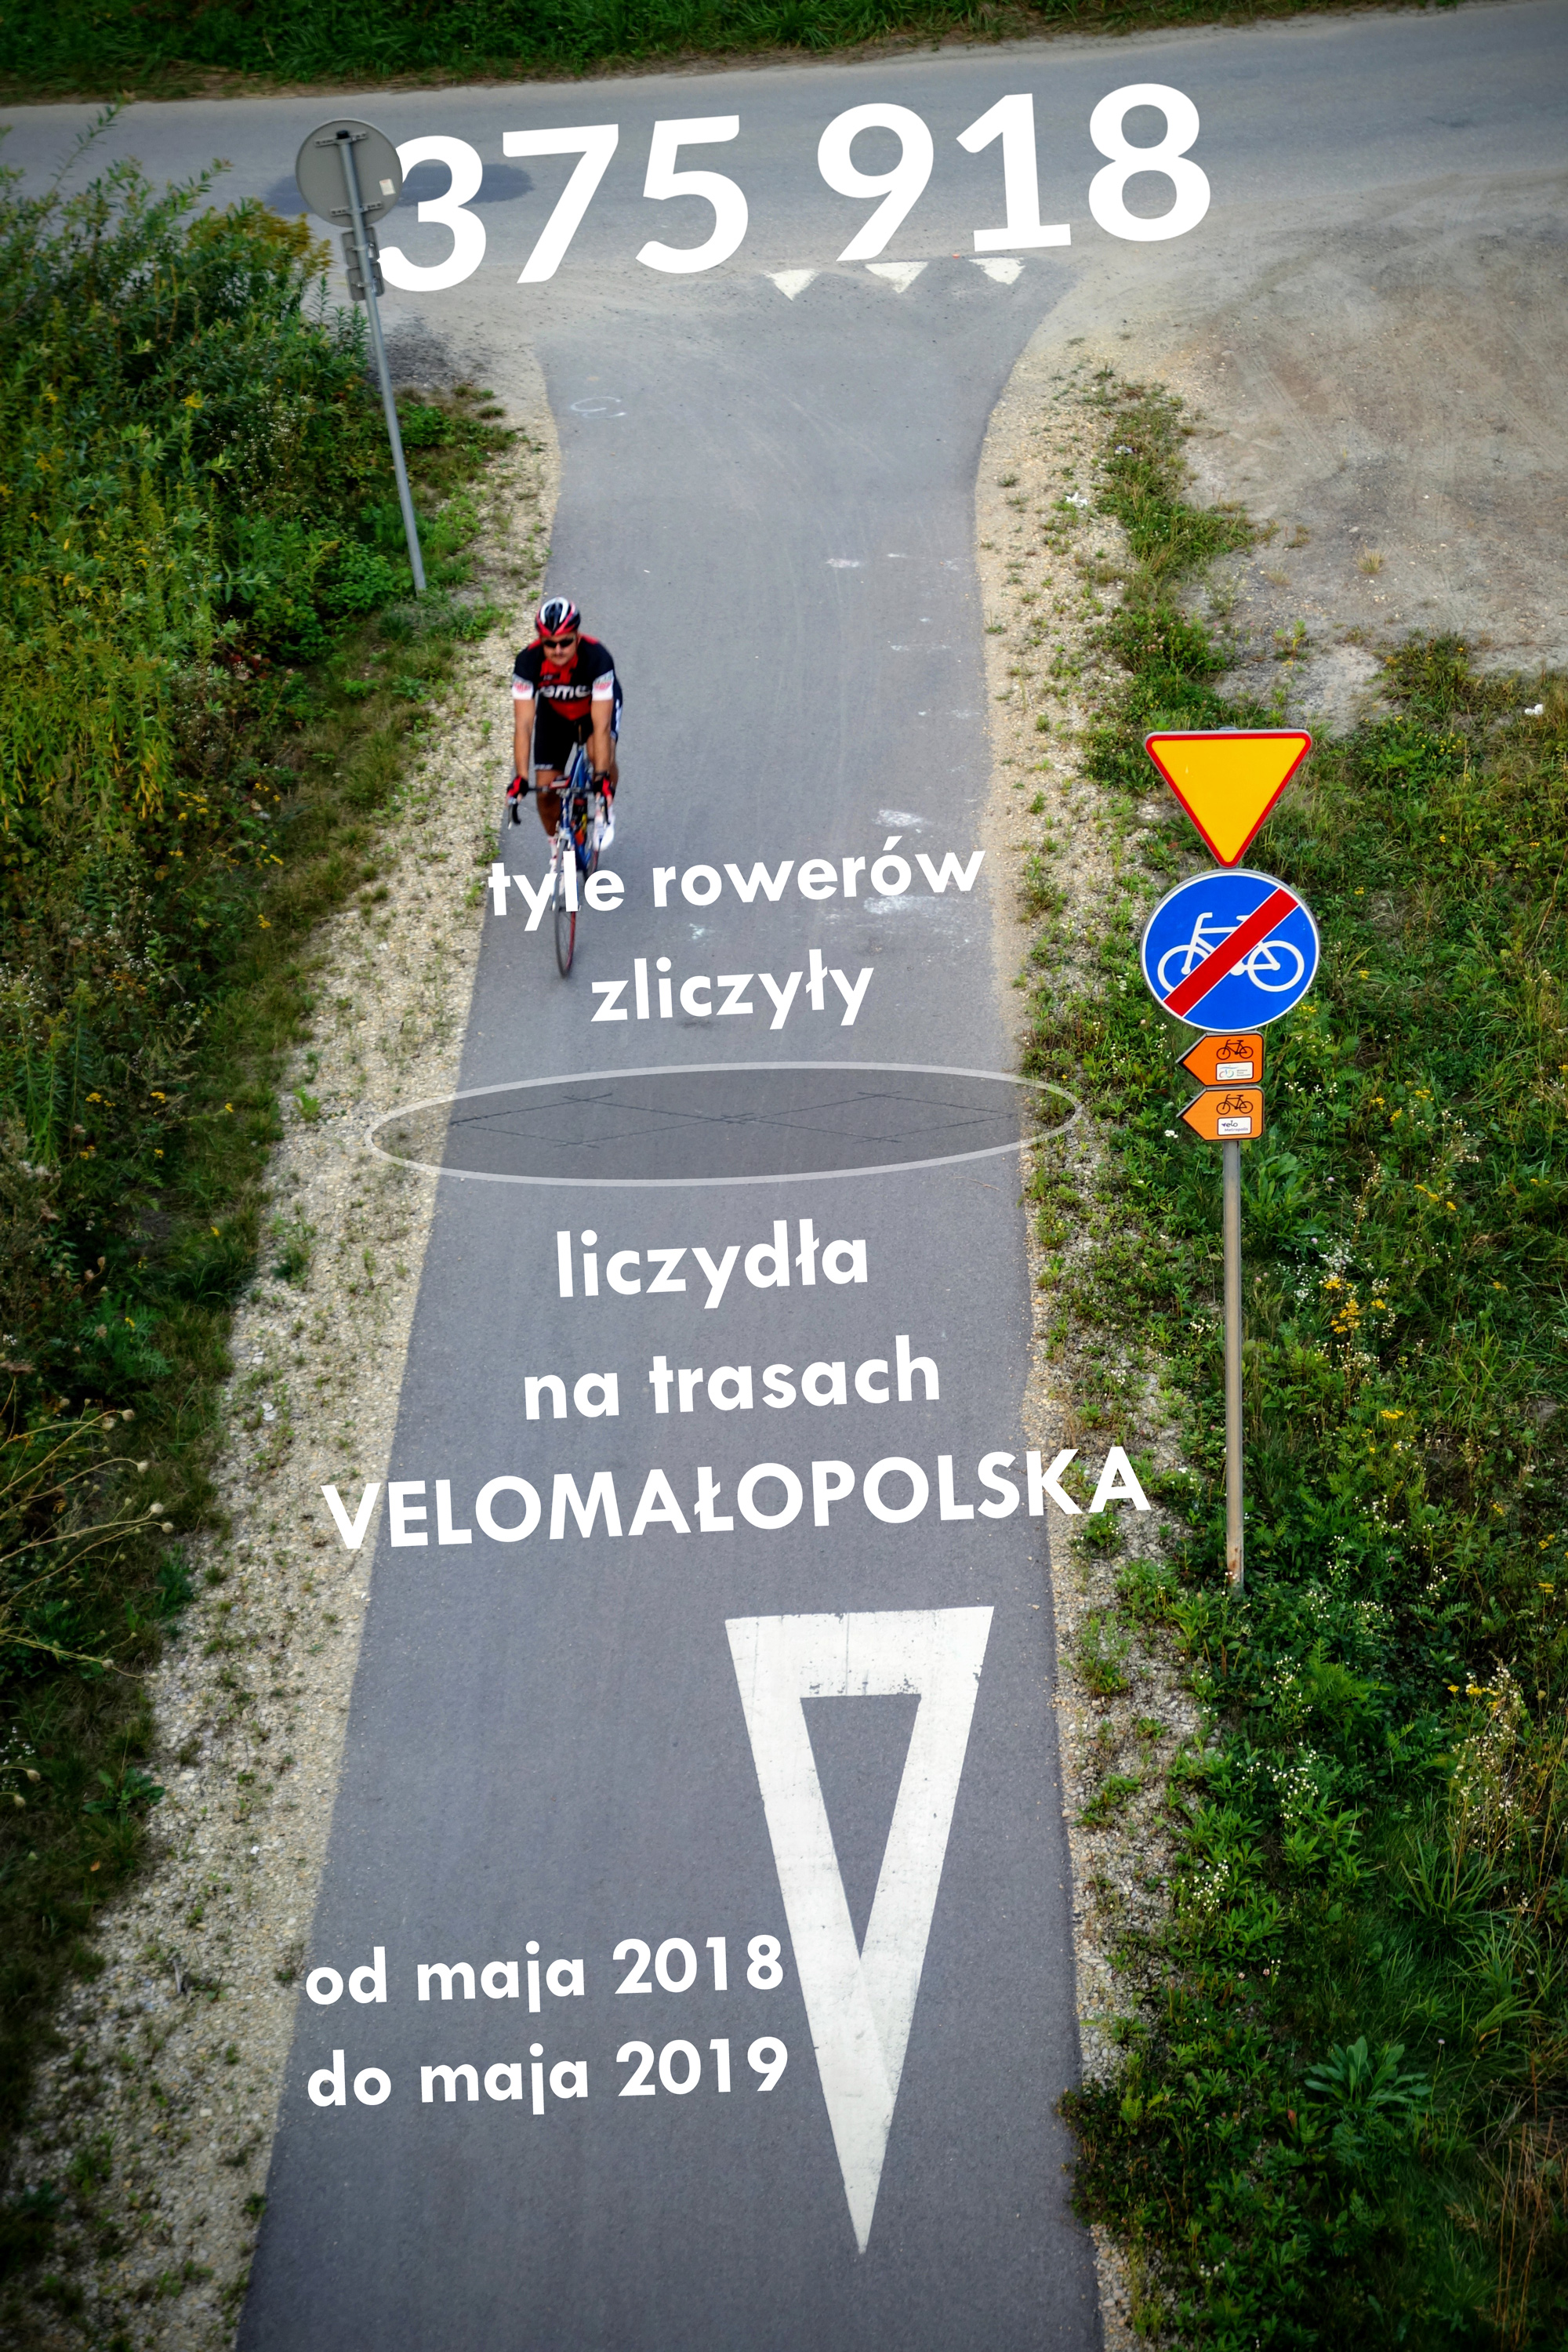 Statystyki z liczydeł rowerowych na trasach VeloMałopolska